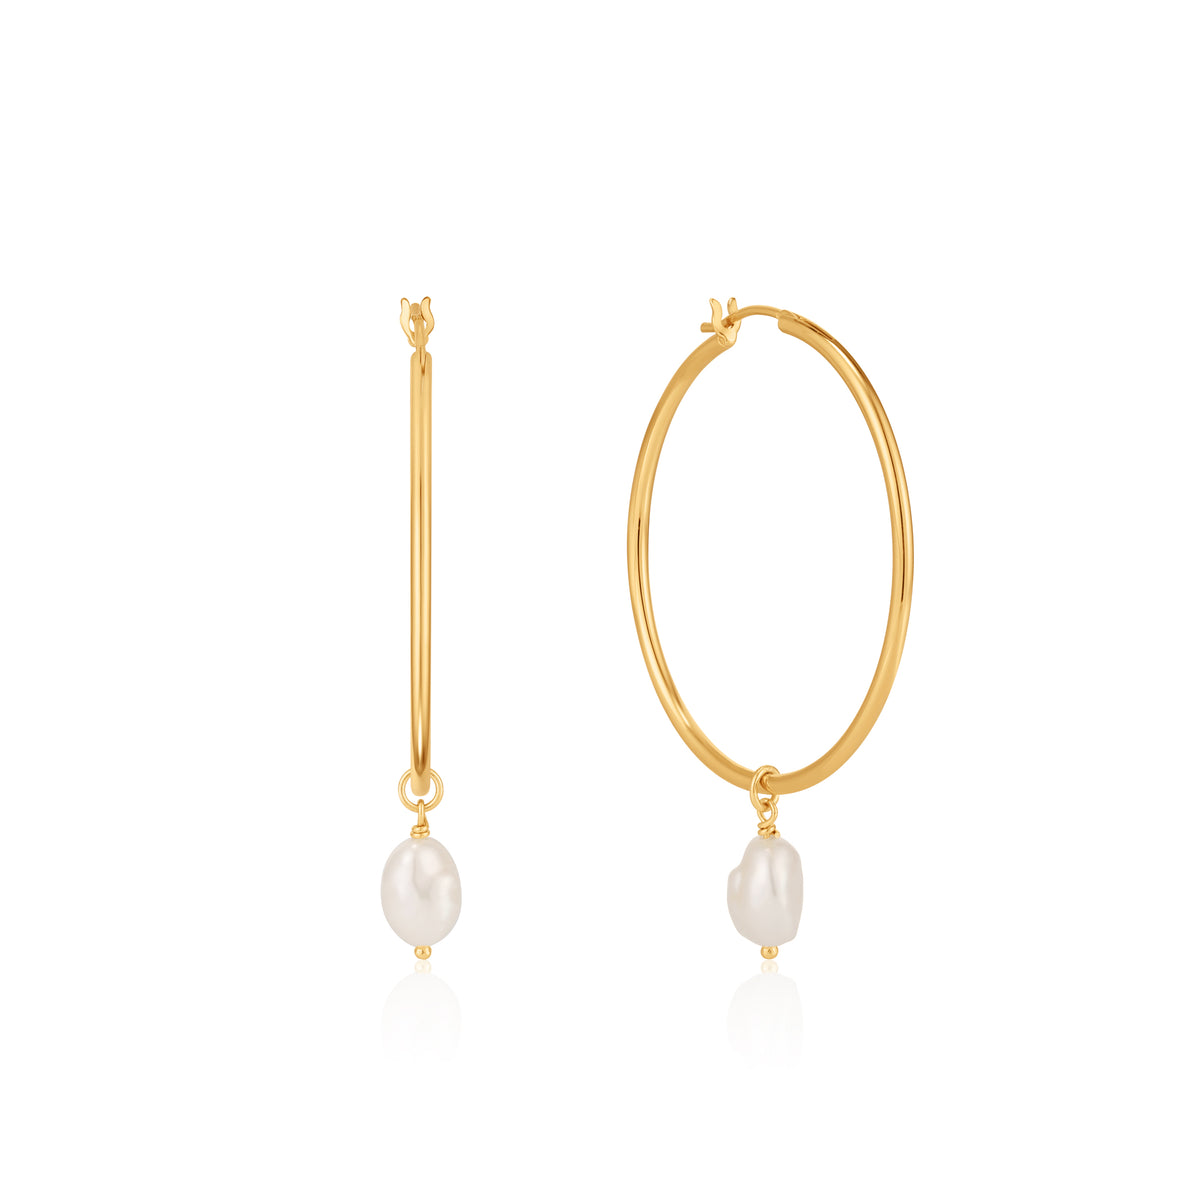 Pearl Hoop Earrings – Michael and Son's Jewelers